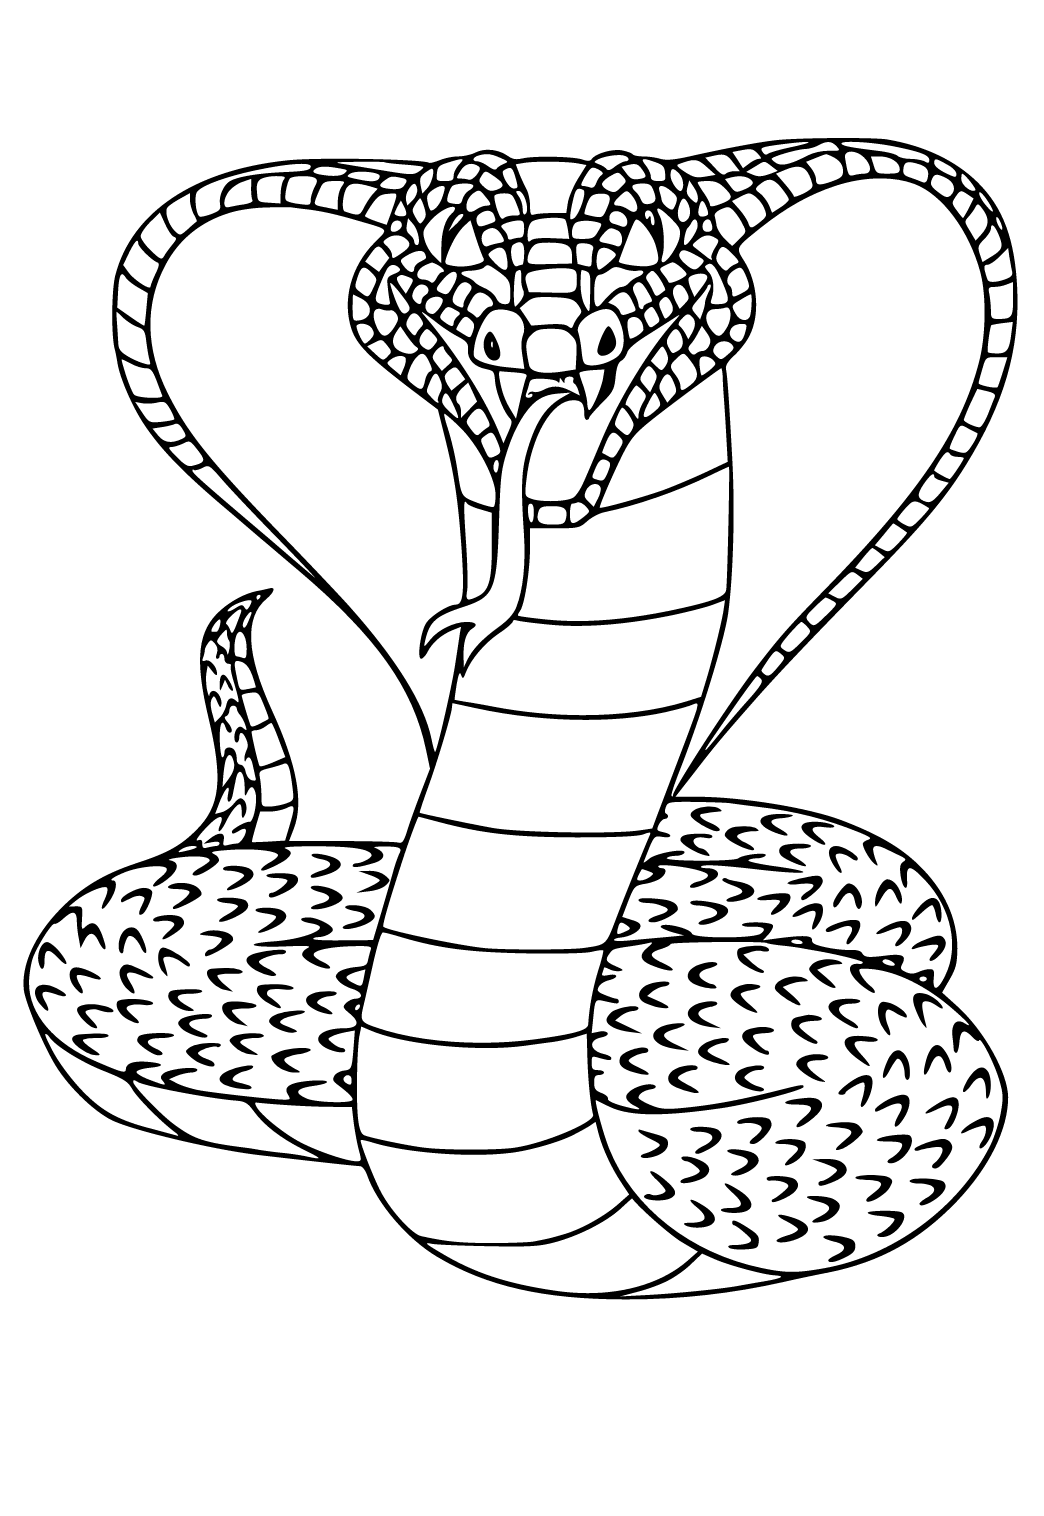 Reptil